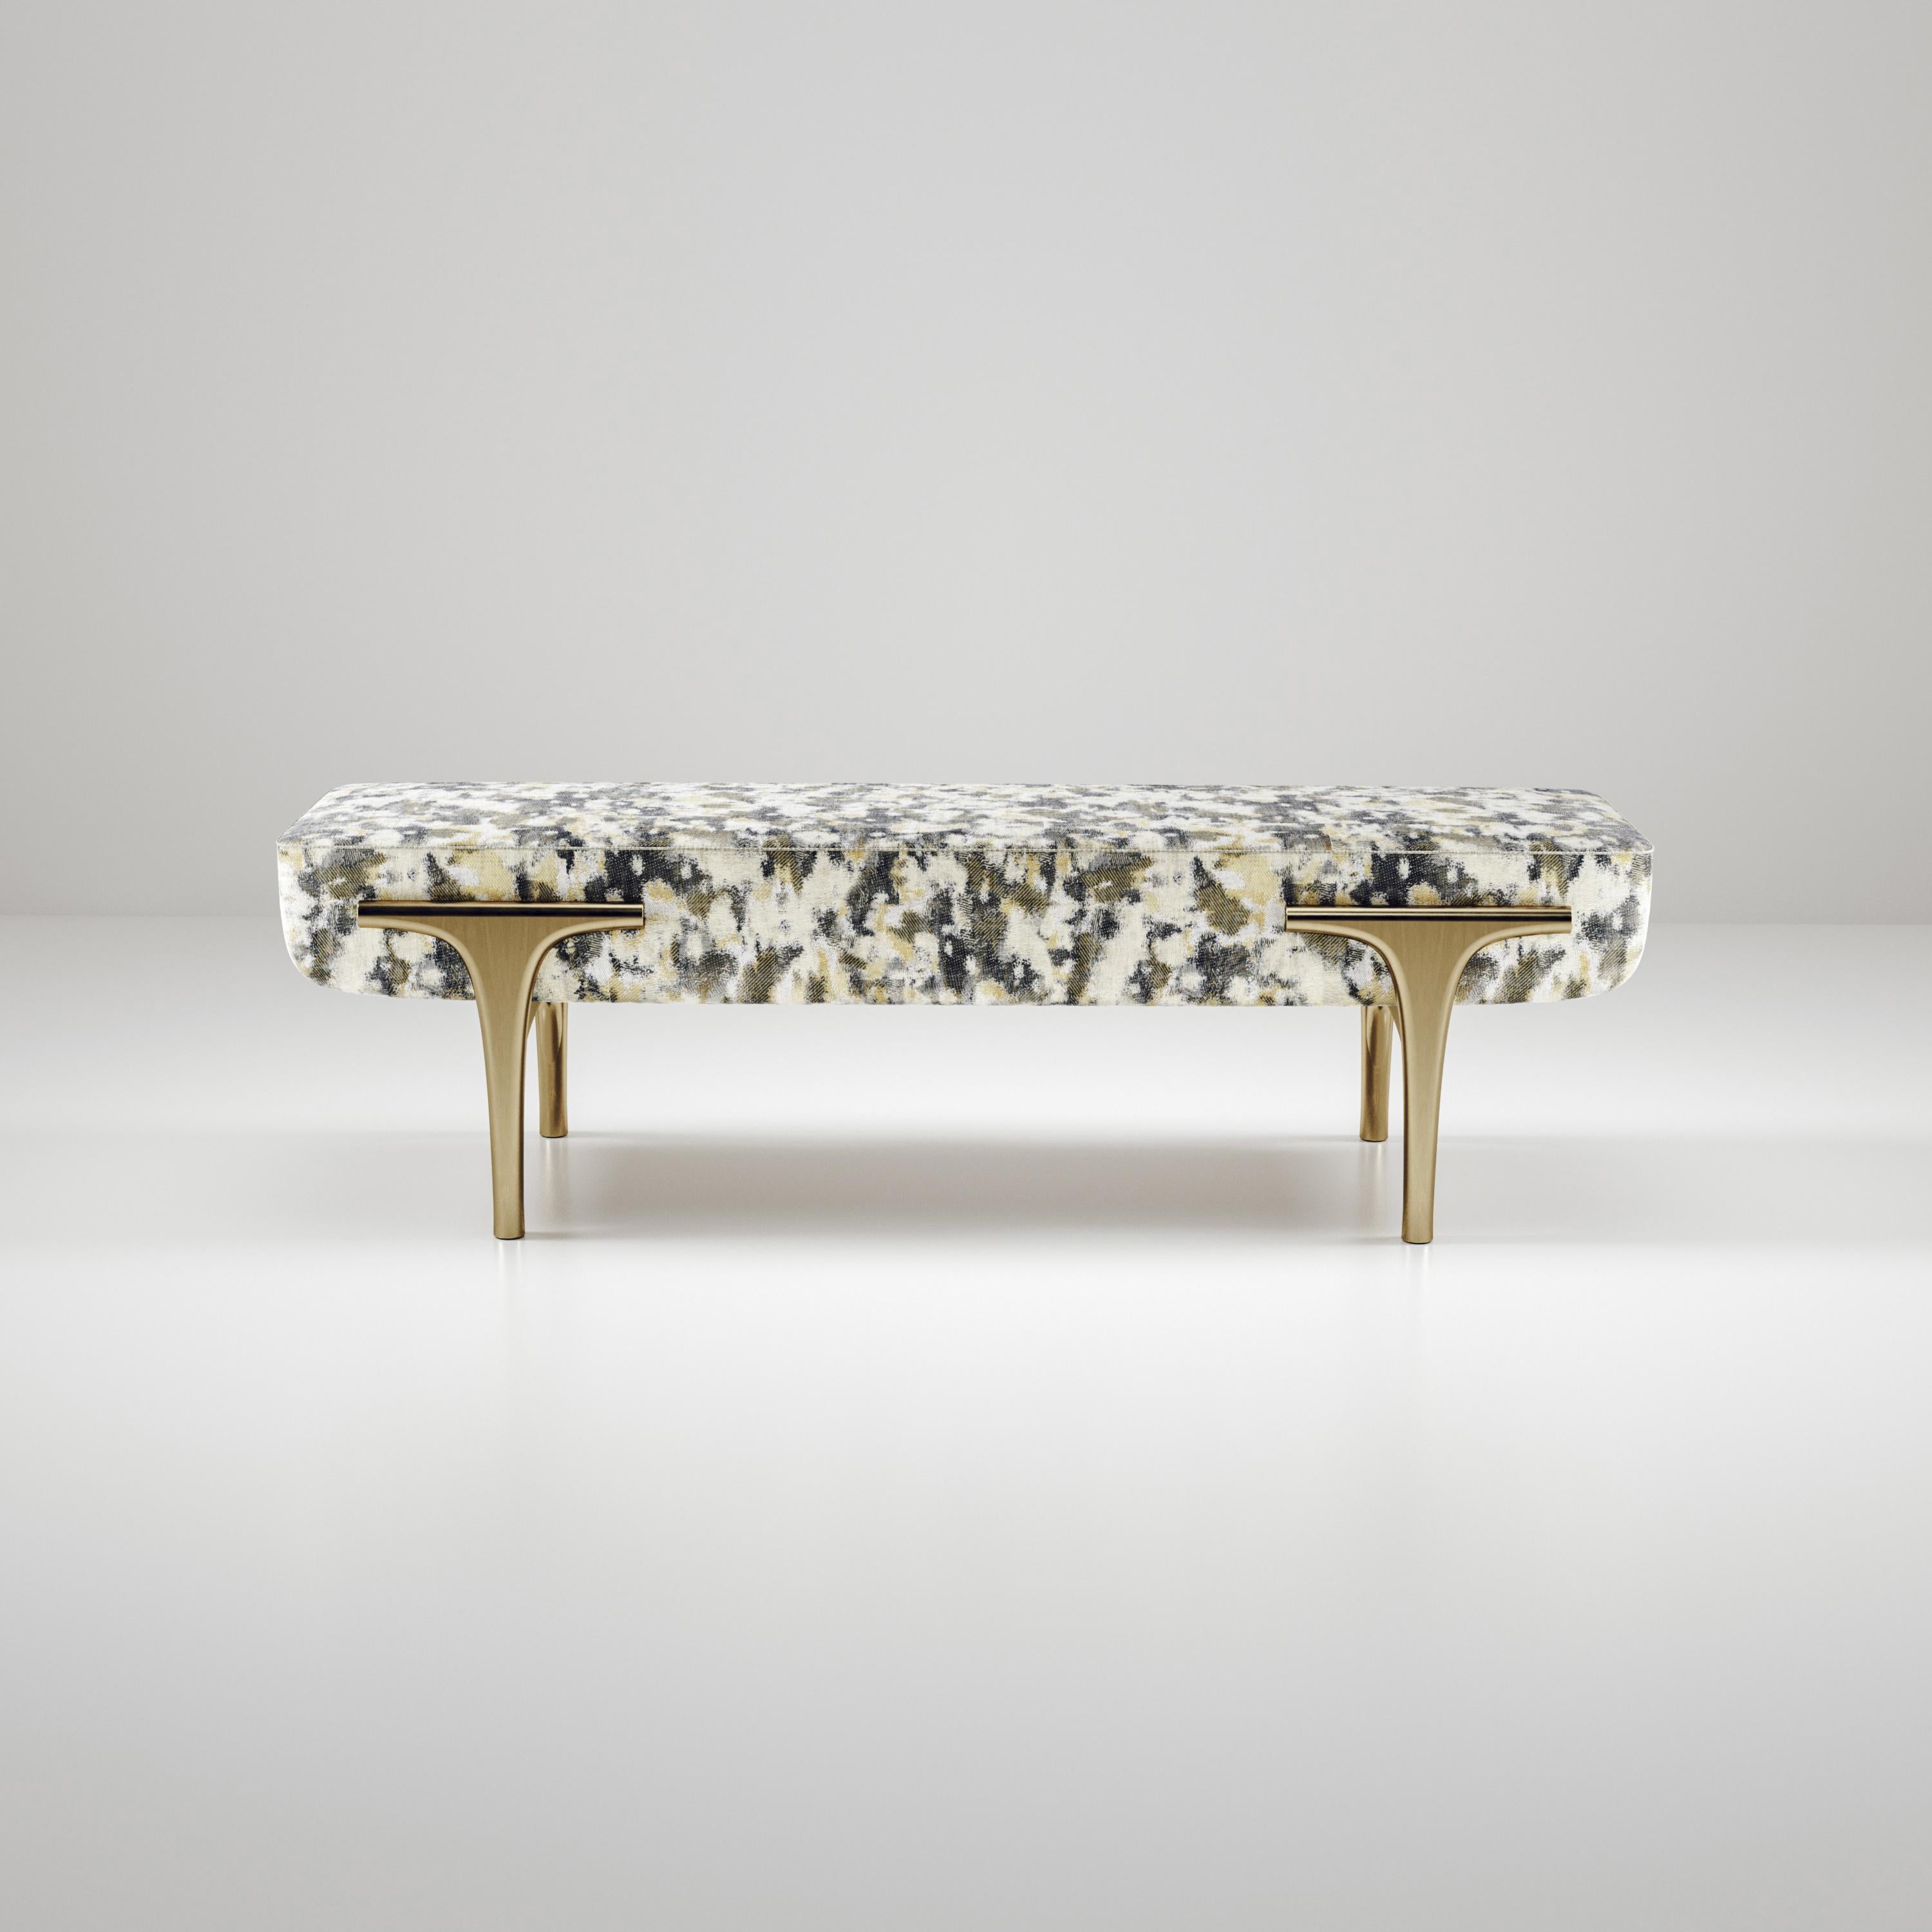 Die Ramo Bank von R & Y Augousti ist ein elegantes und vielseitiges Möbelstück. Das gepolsterte Möbelstück bietet Komfort und bewahrt mit dem Gestell und den Details aus Messing in Bronze-Patina eine einzigartige Ästhetik. Das Camouflage-Muster ist